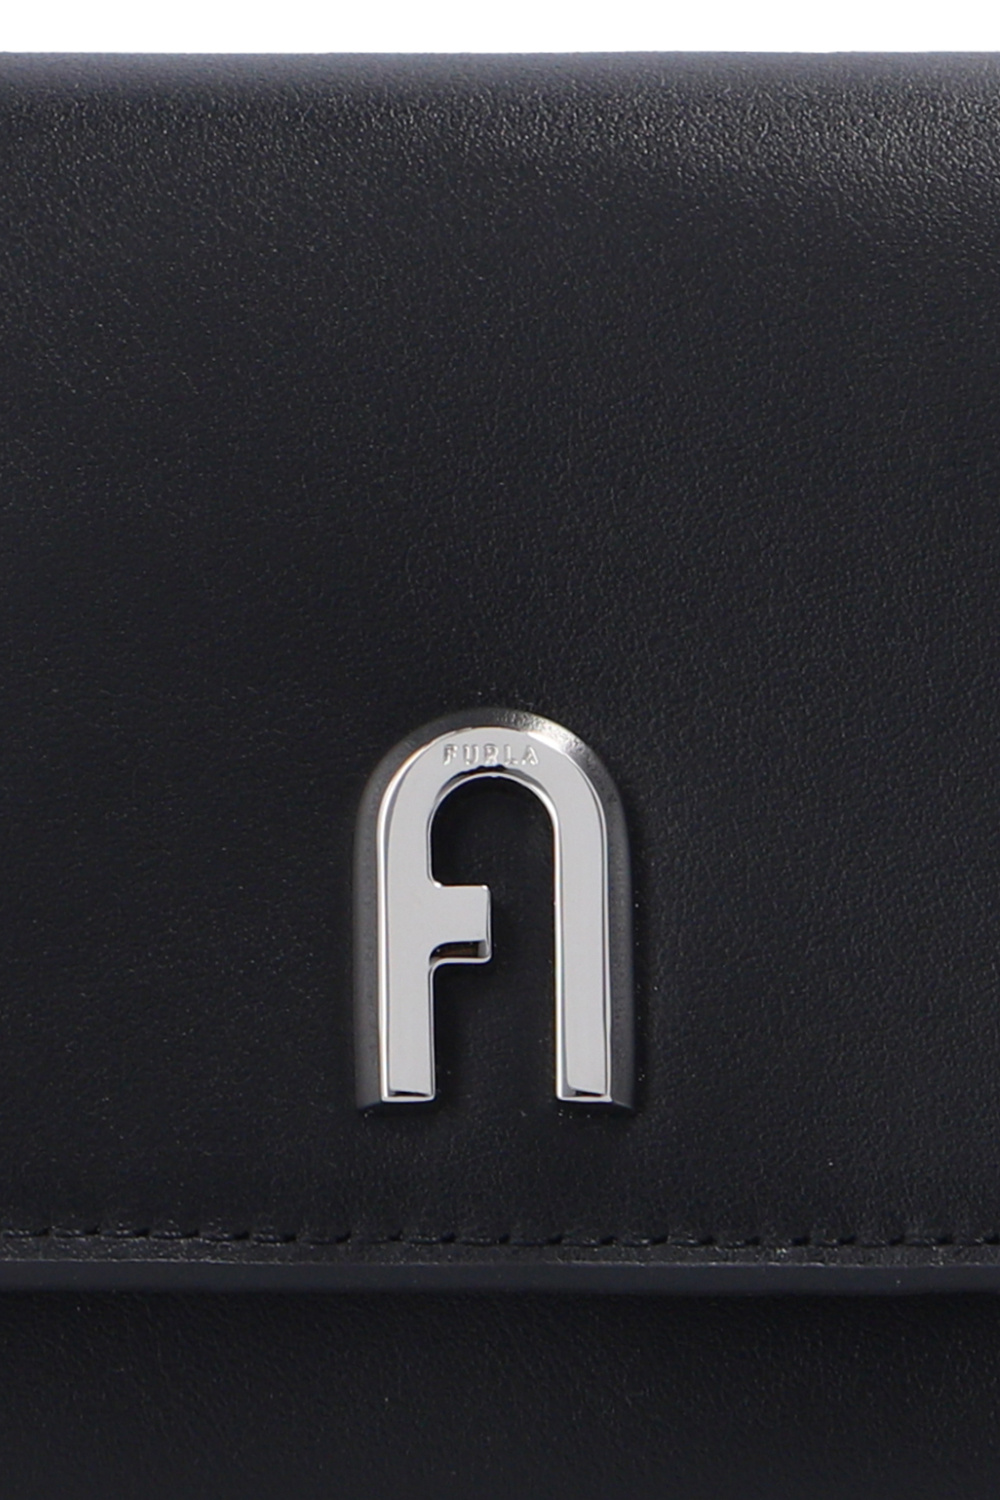 Furla ‘Moon M’ leather wallet